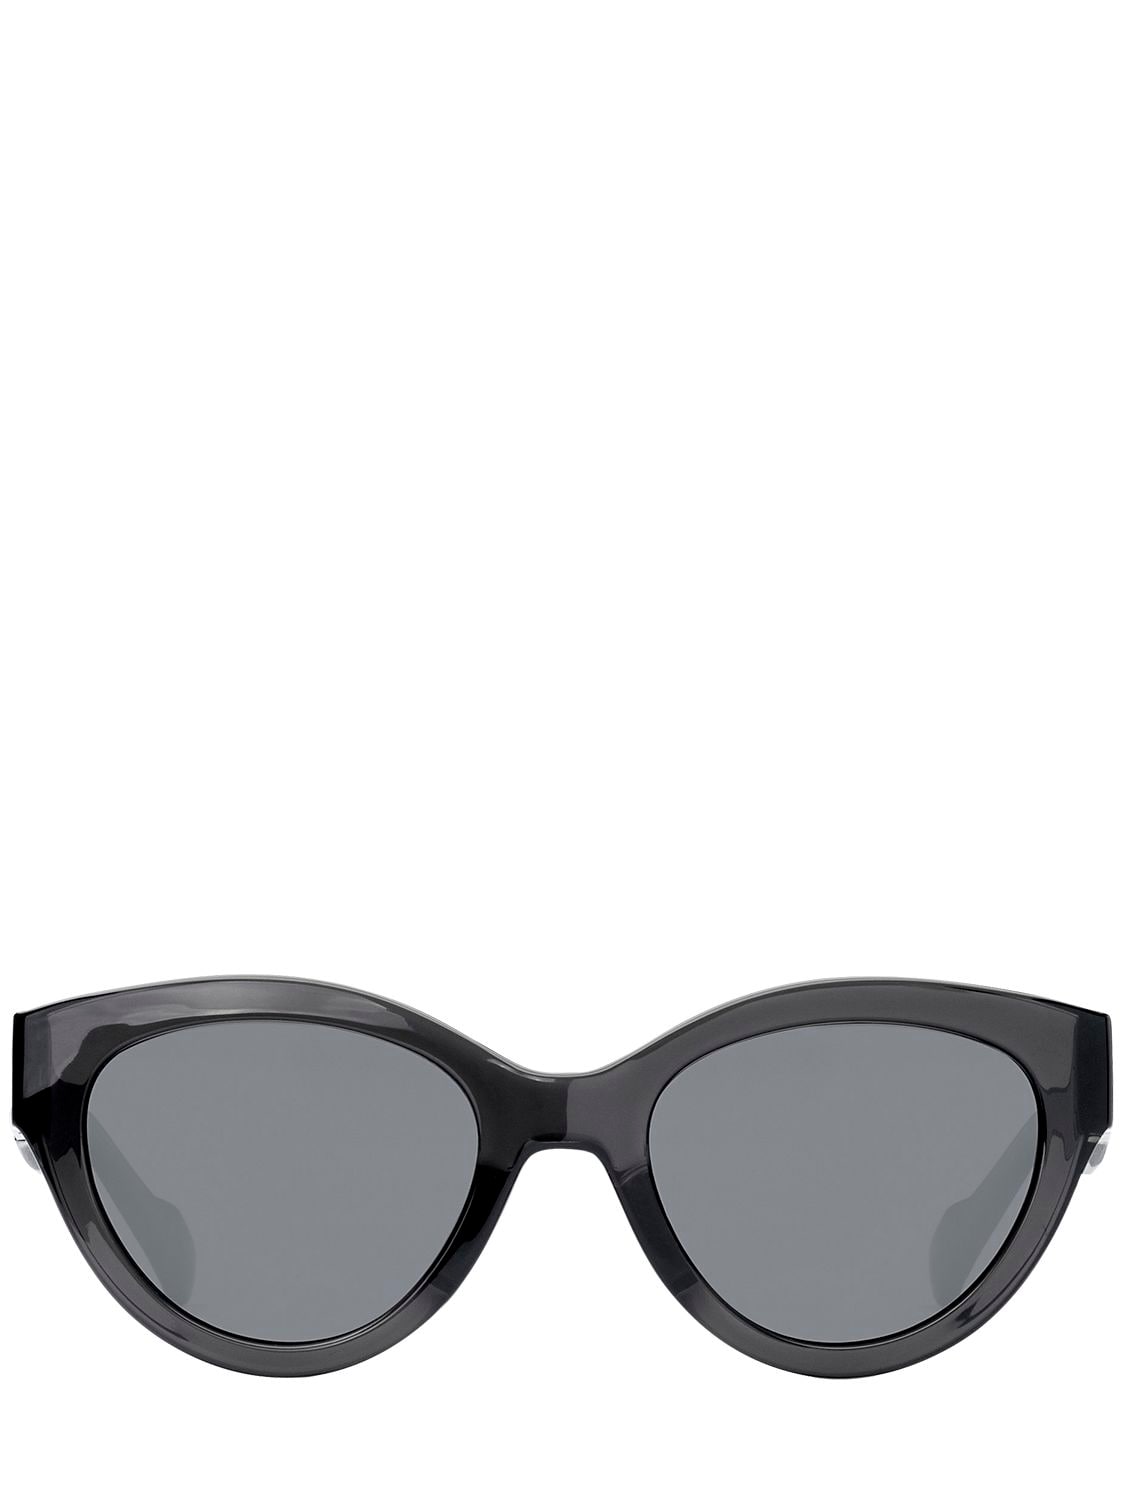 Adidas Originals By Italia Independent Acetate Cat-eye Sunglasses In Black